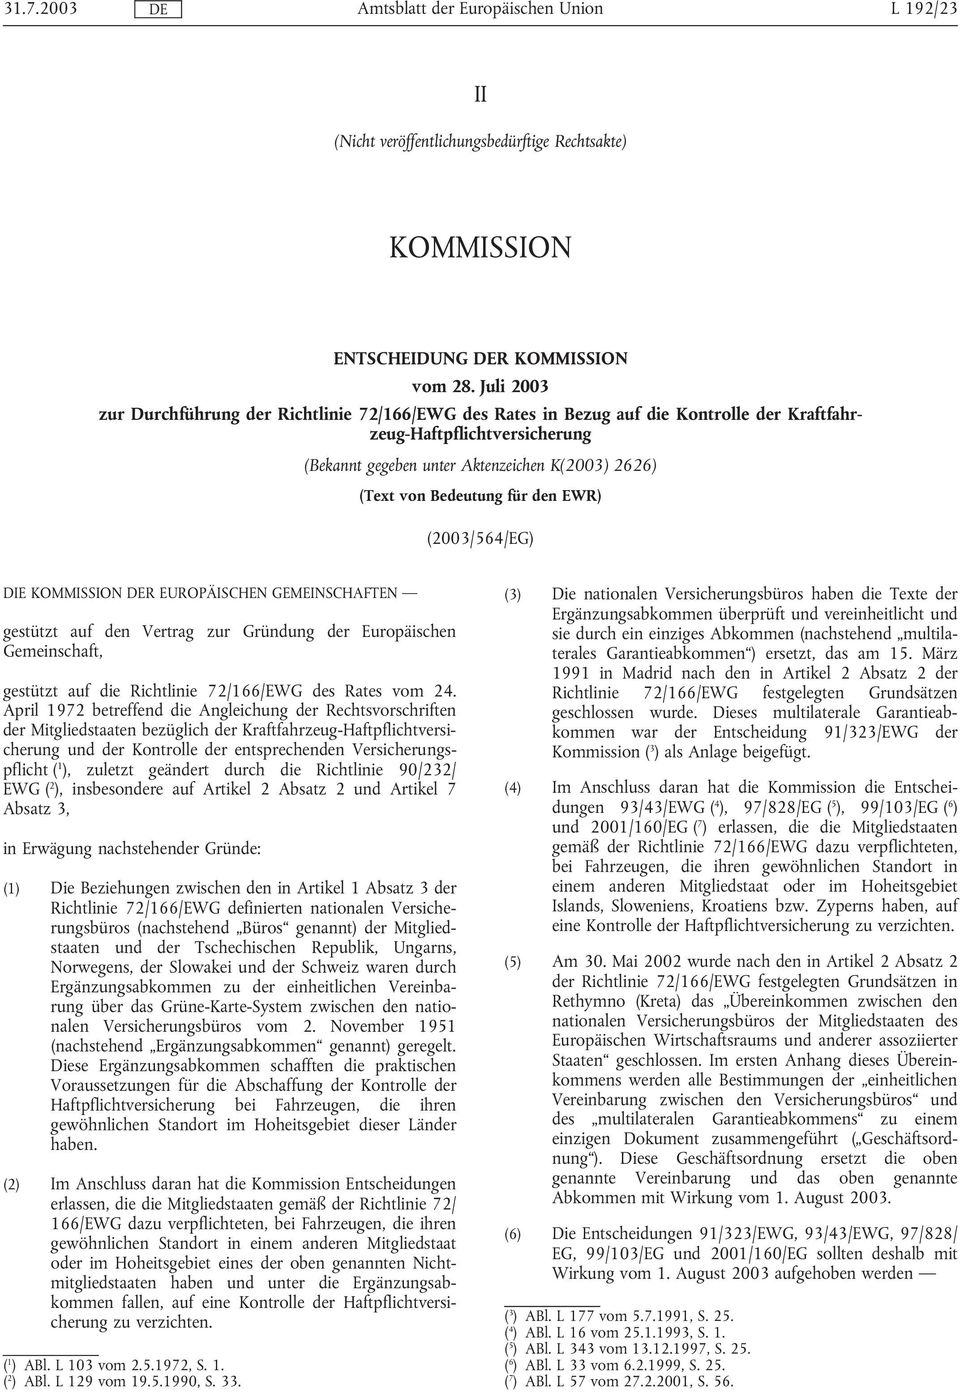 Bedeutung für den EWR) (2003/564/EG) DIE KOMMISSION R EUROPÄISCHEN GEMEINSCHAFTEN gestützt auf den Vertrag zur Gründung der Europäischen Gemeinschaft, gestützt auf die Richtlinie 72/166/EWG des Rates